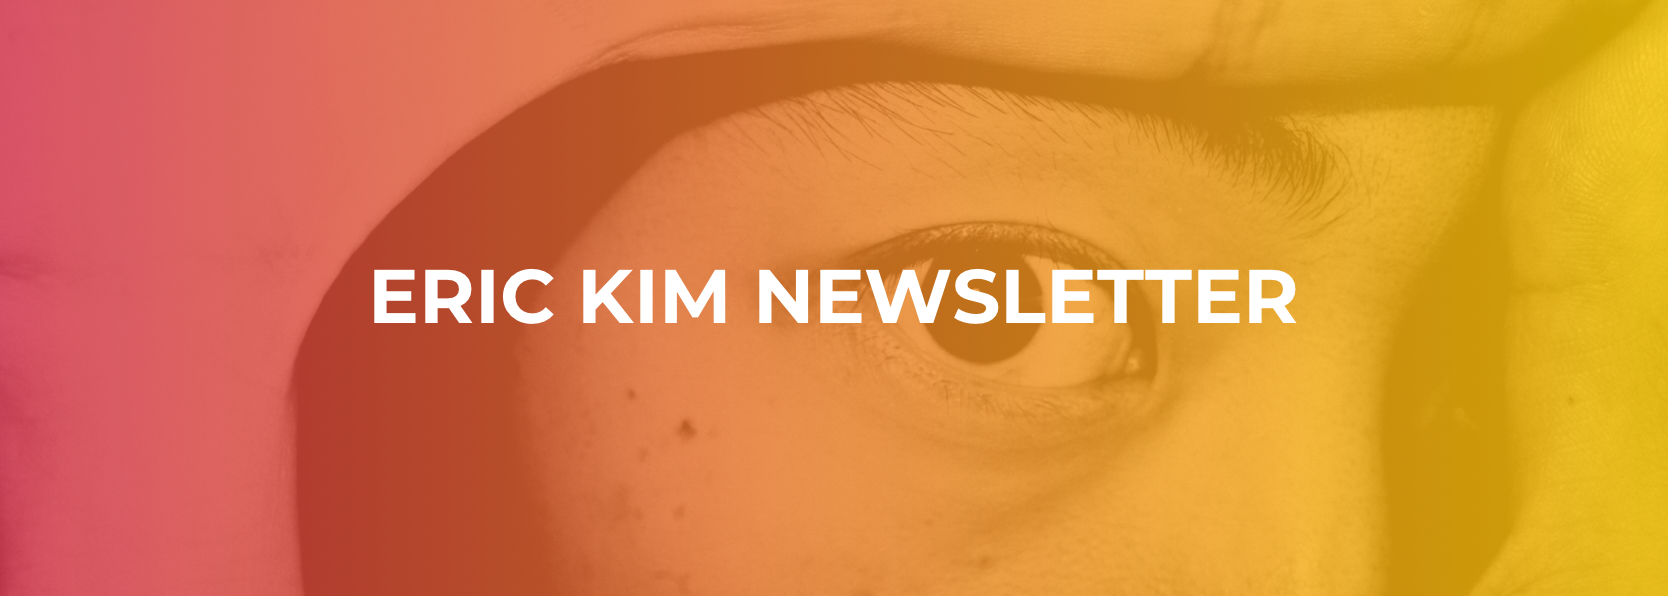 Eric Kim Newsletter